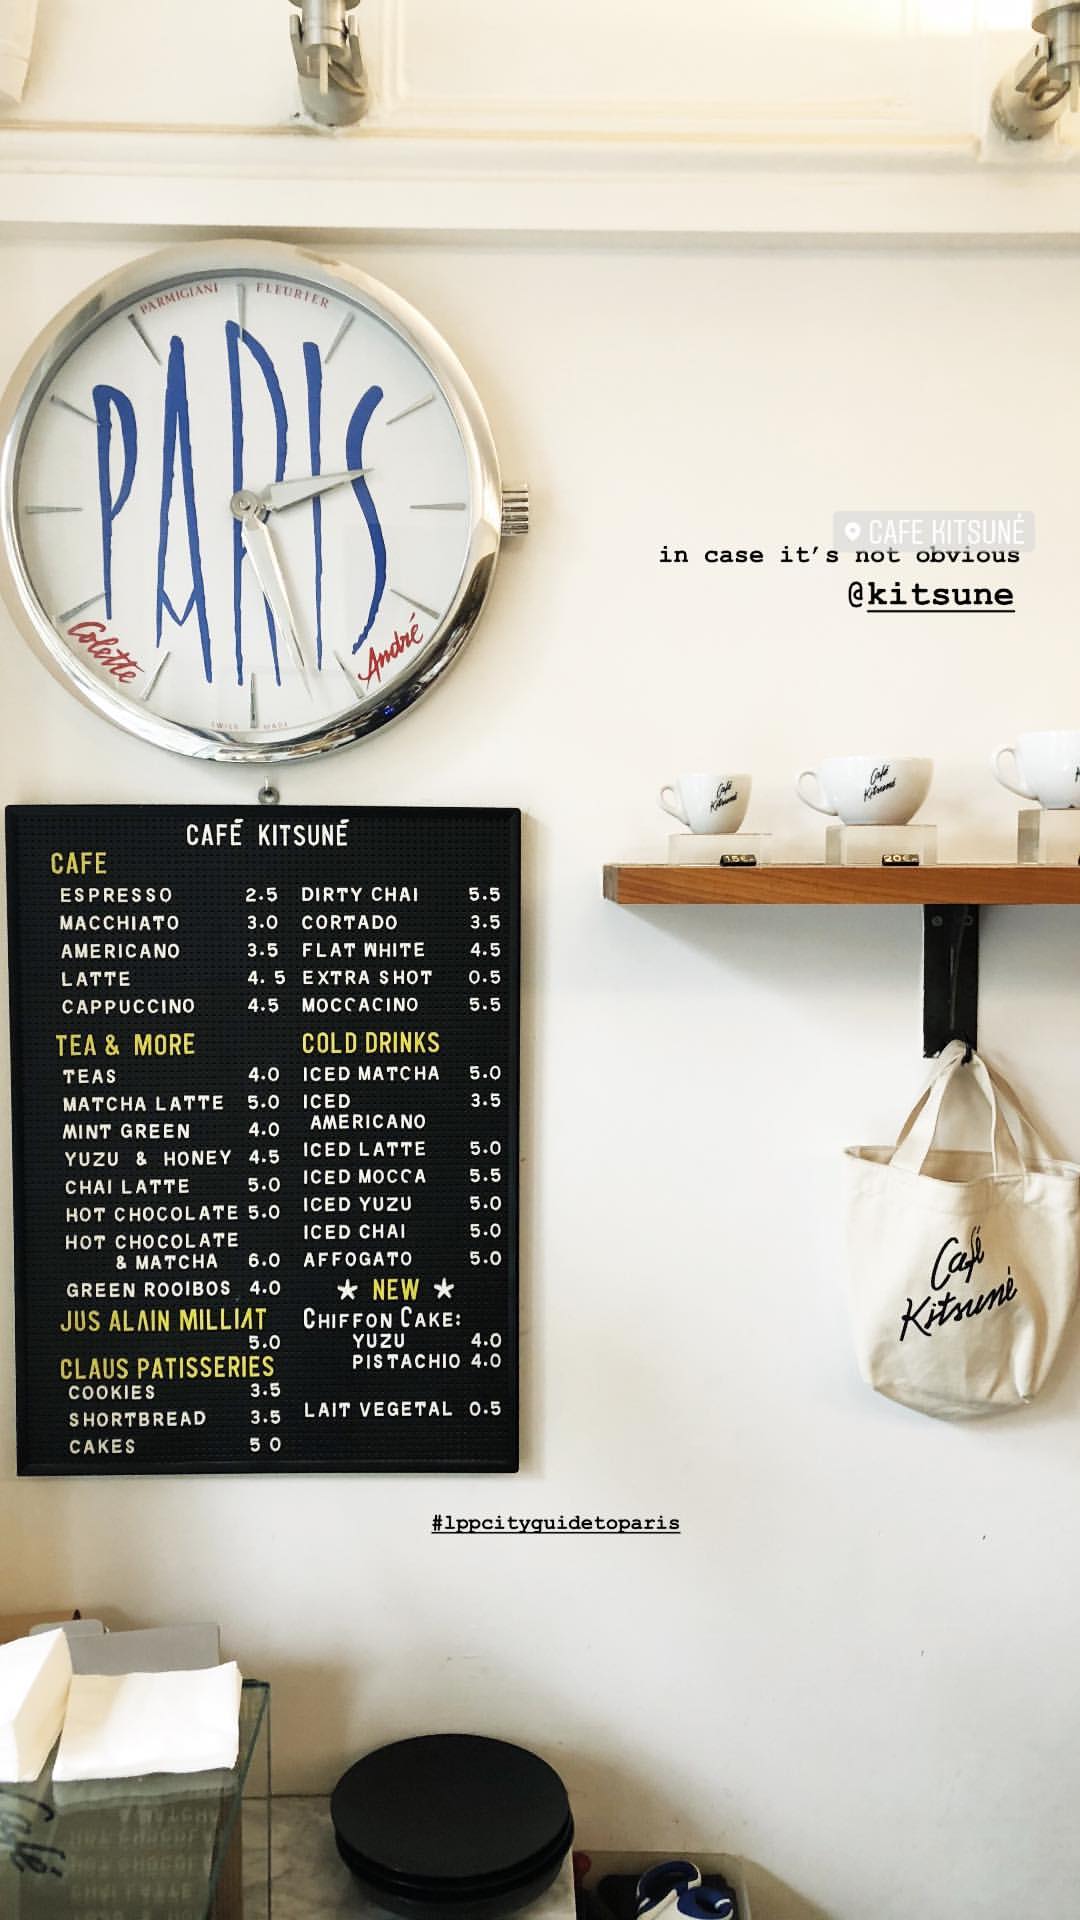 PARIS-kitsune-1.jpg